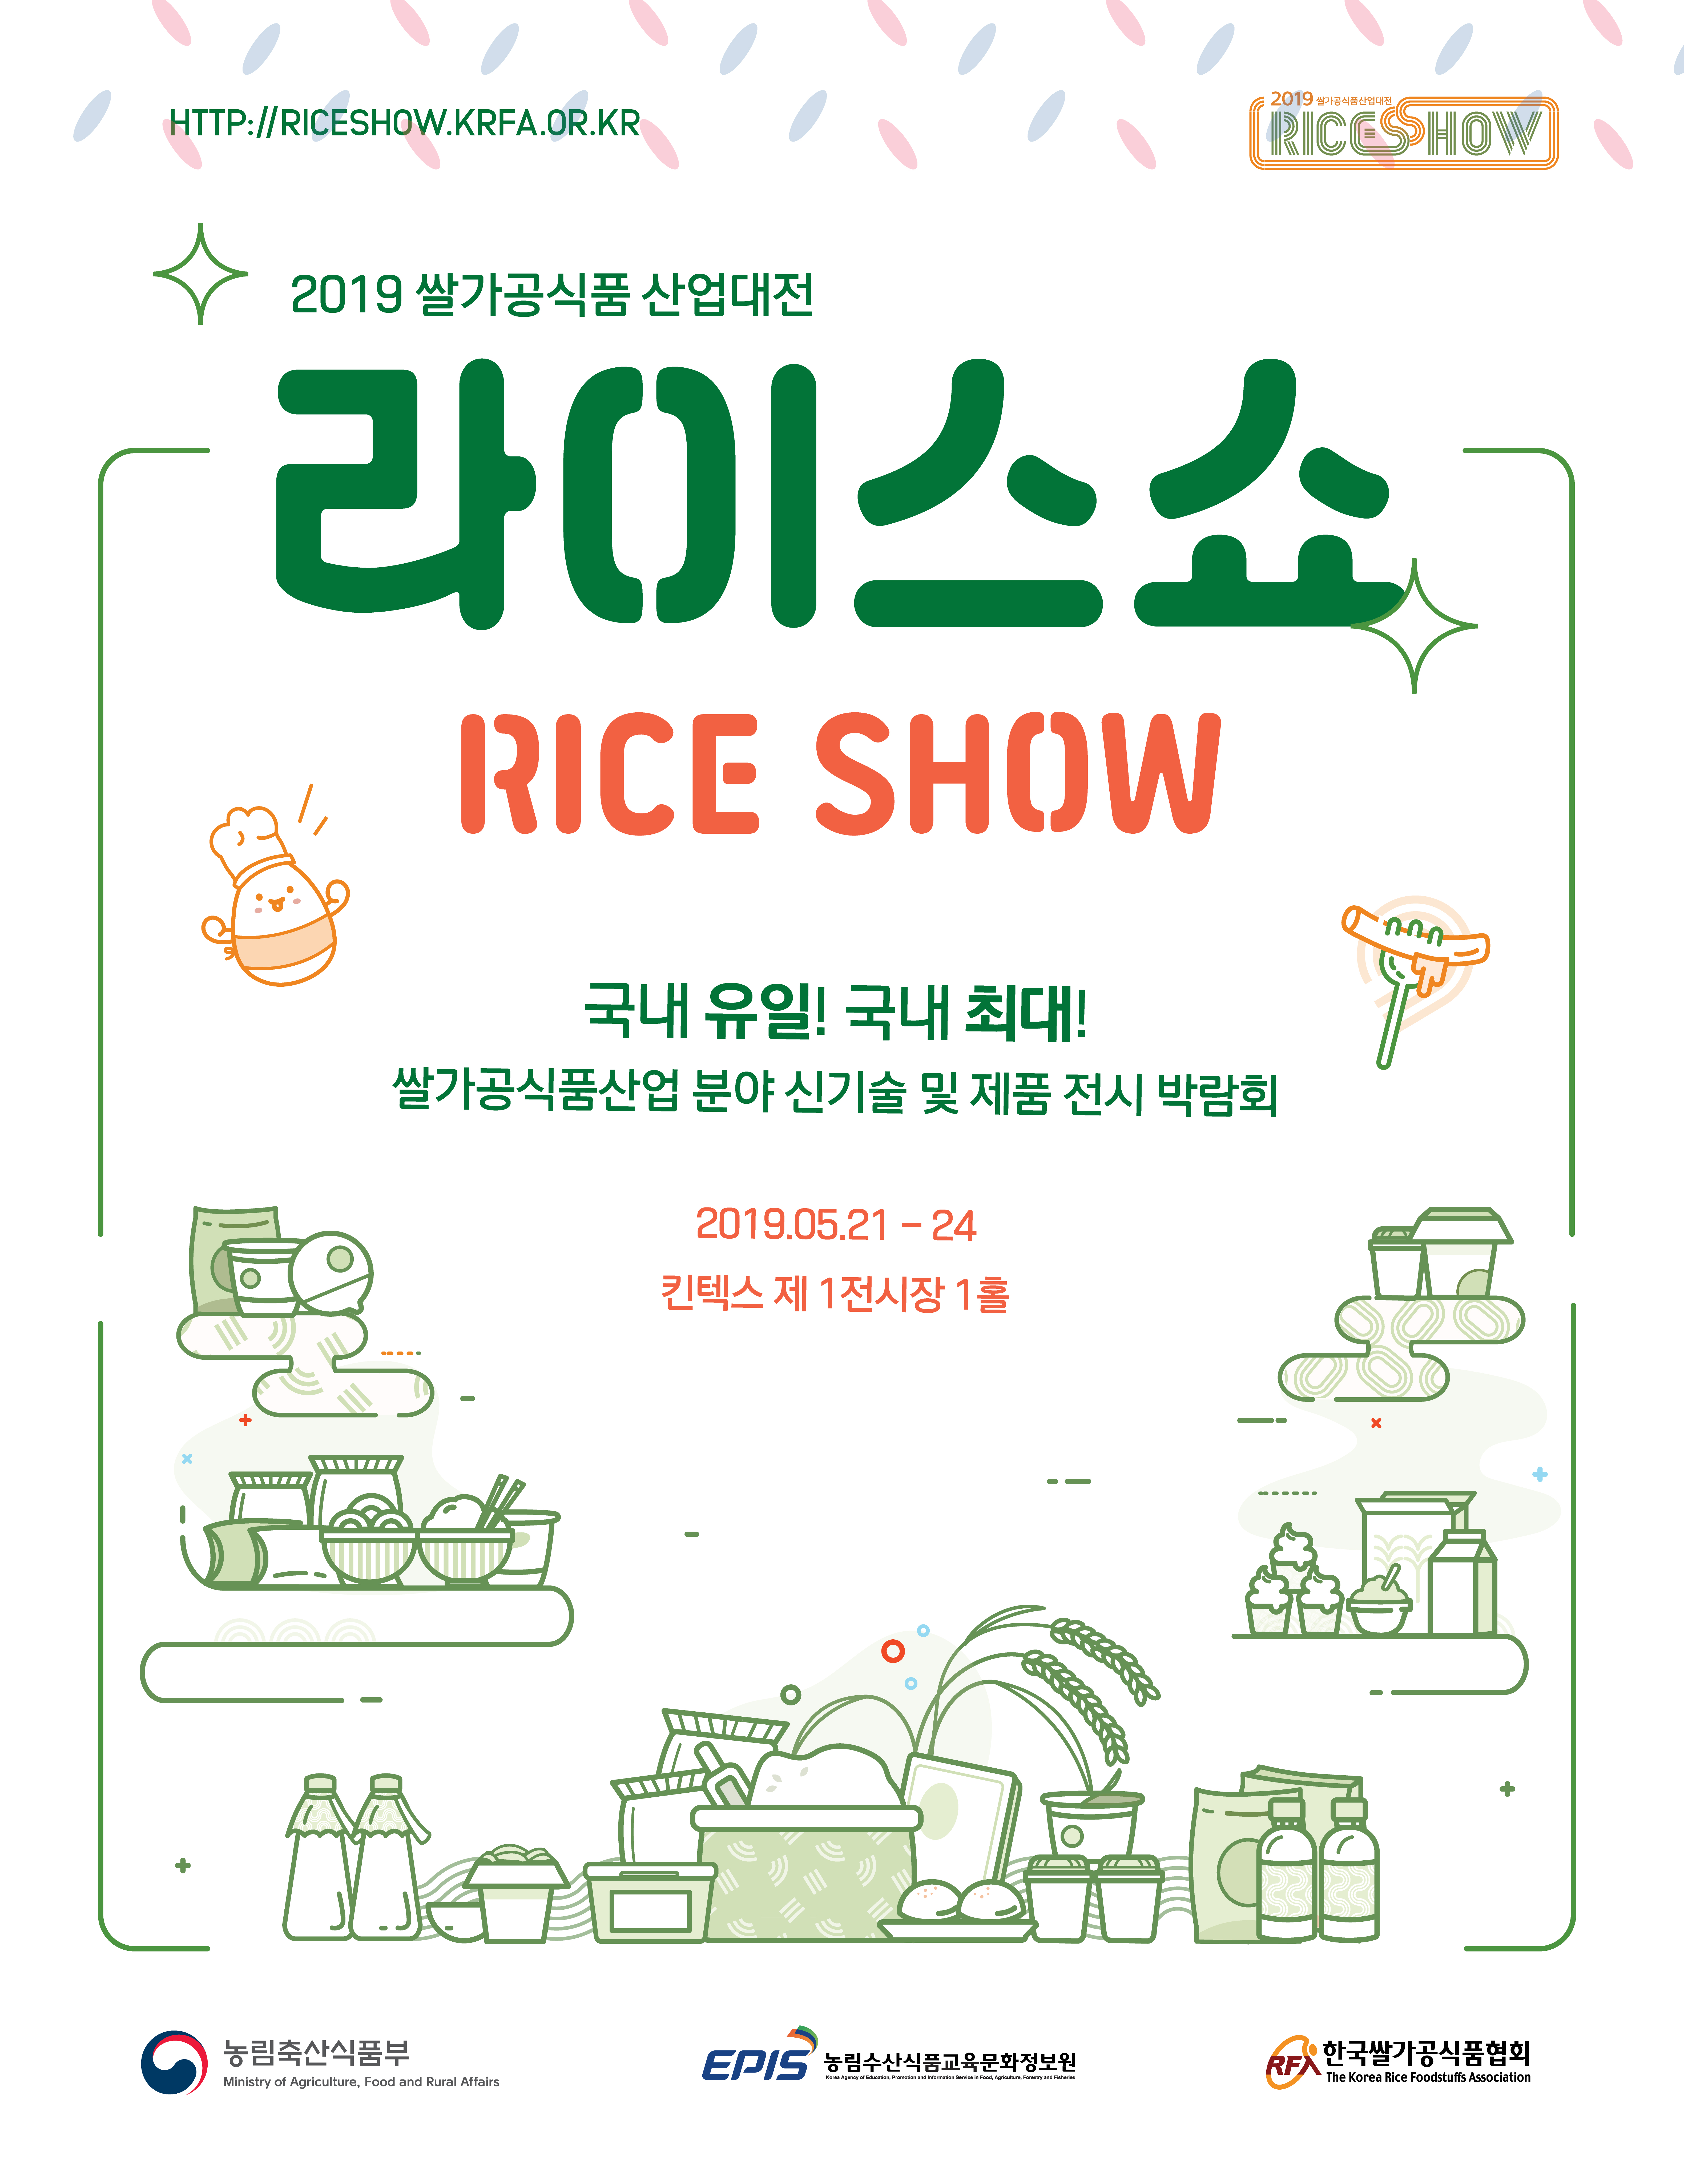 2019 쌀가공식품 산업대전 라이스쇼 (Rice Show)